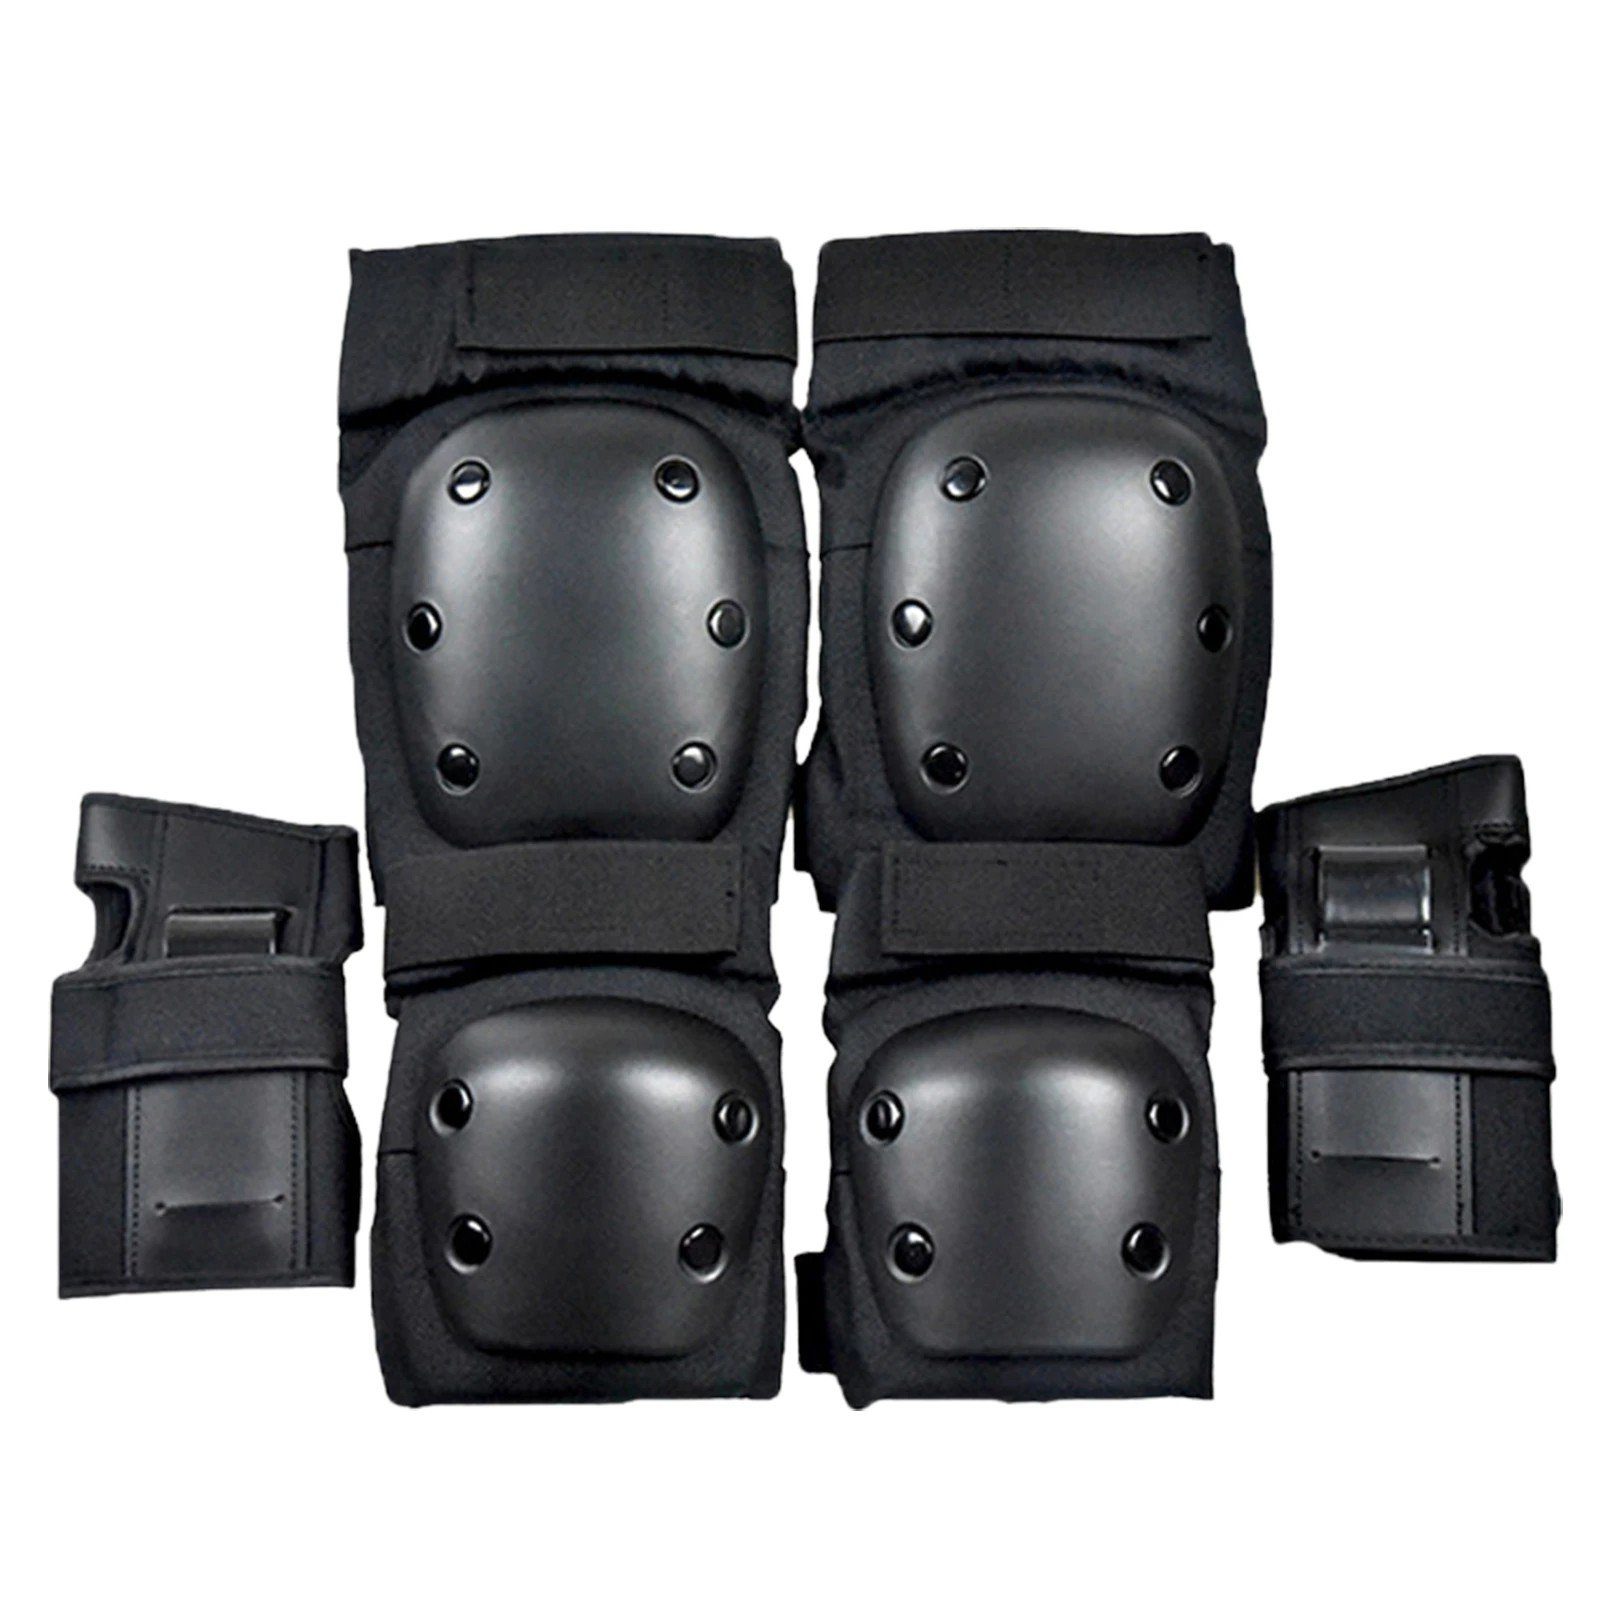 6pcs Erwachsenen Protektorenset Inlineskating Schutzausrüstung Sport Sets S/M/L 